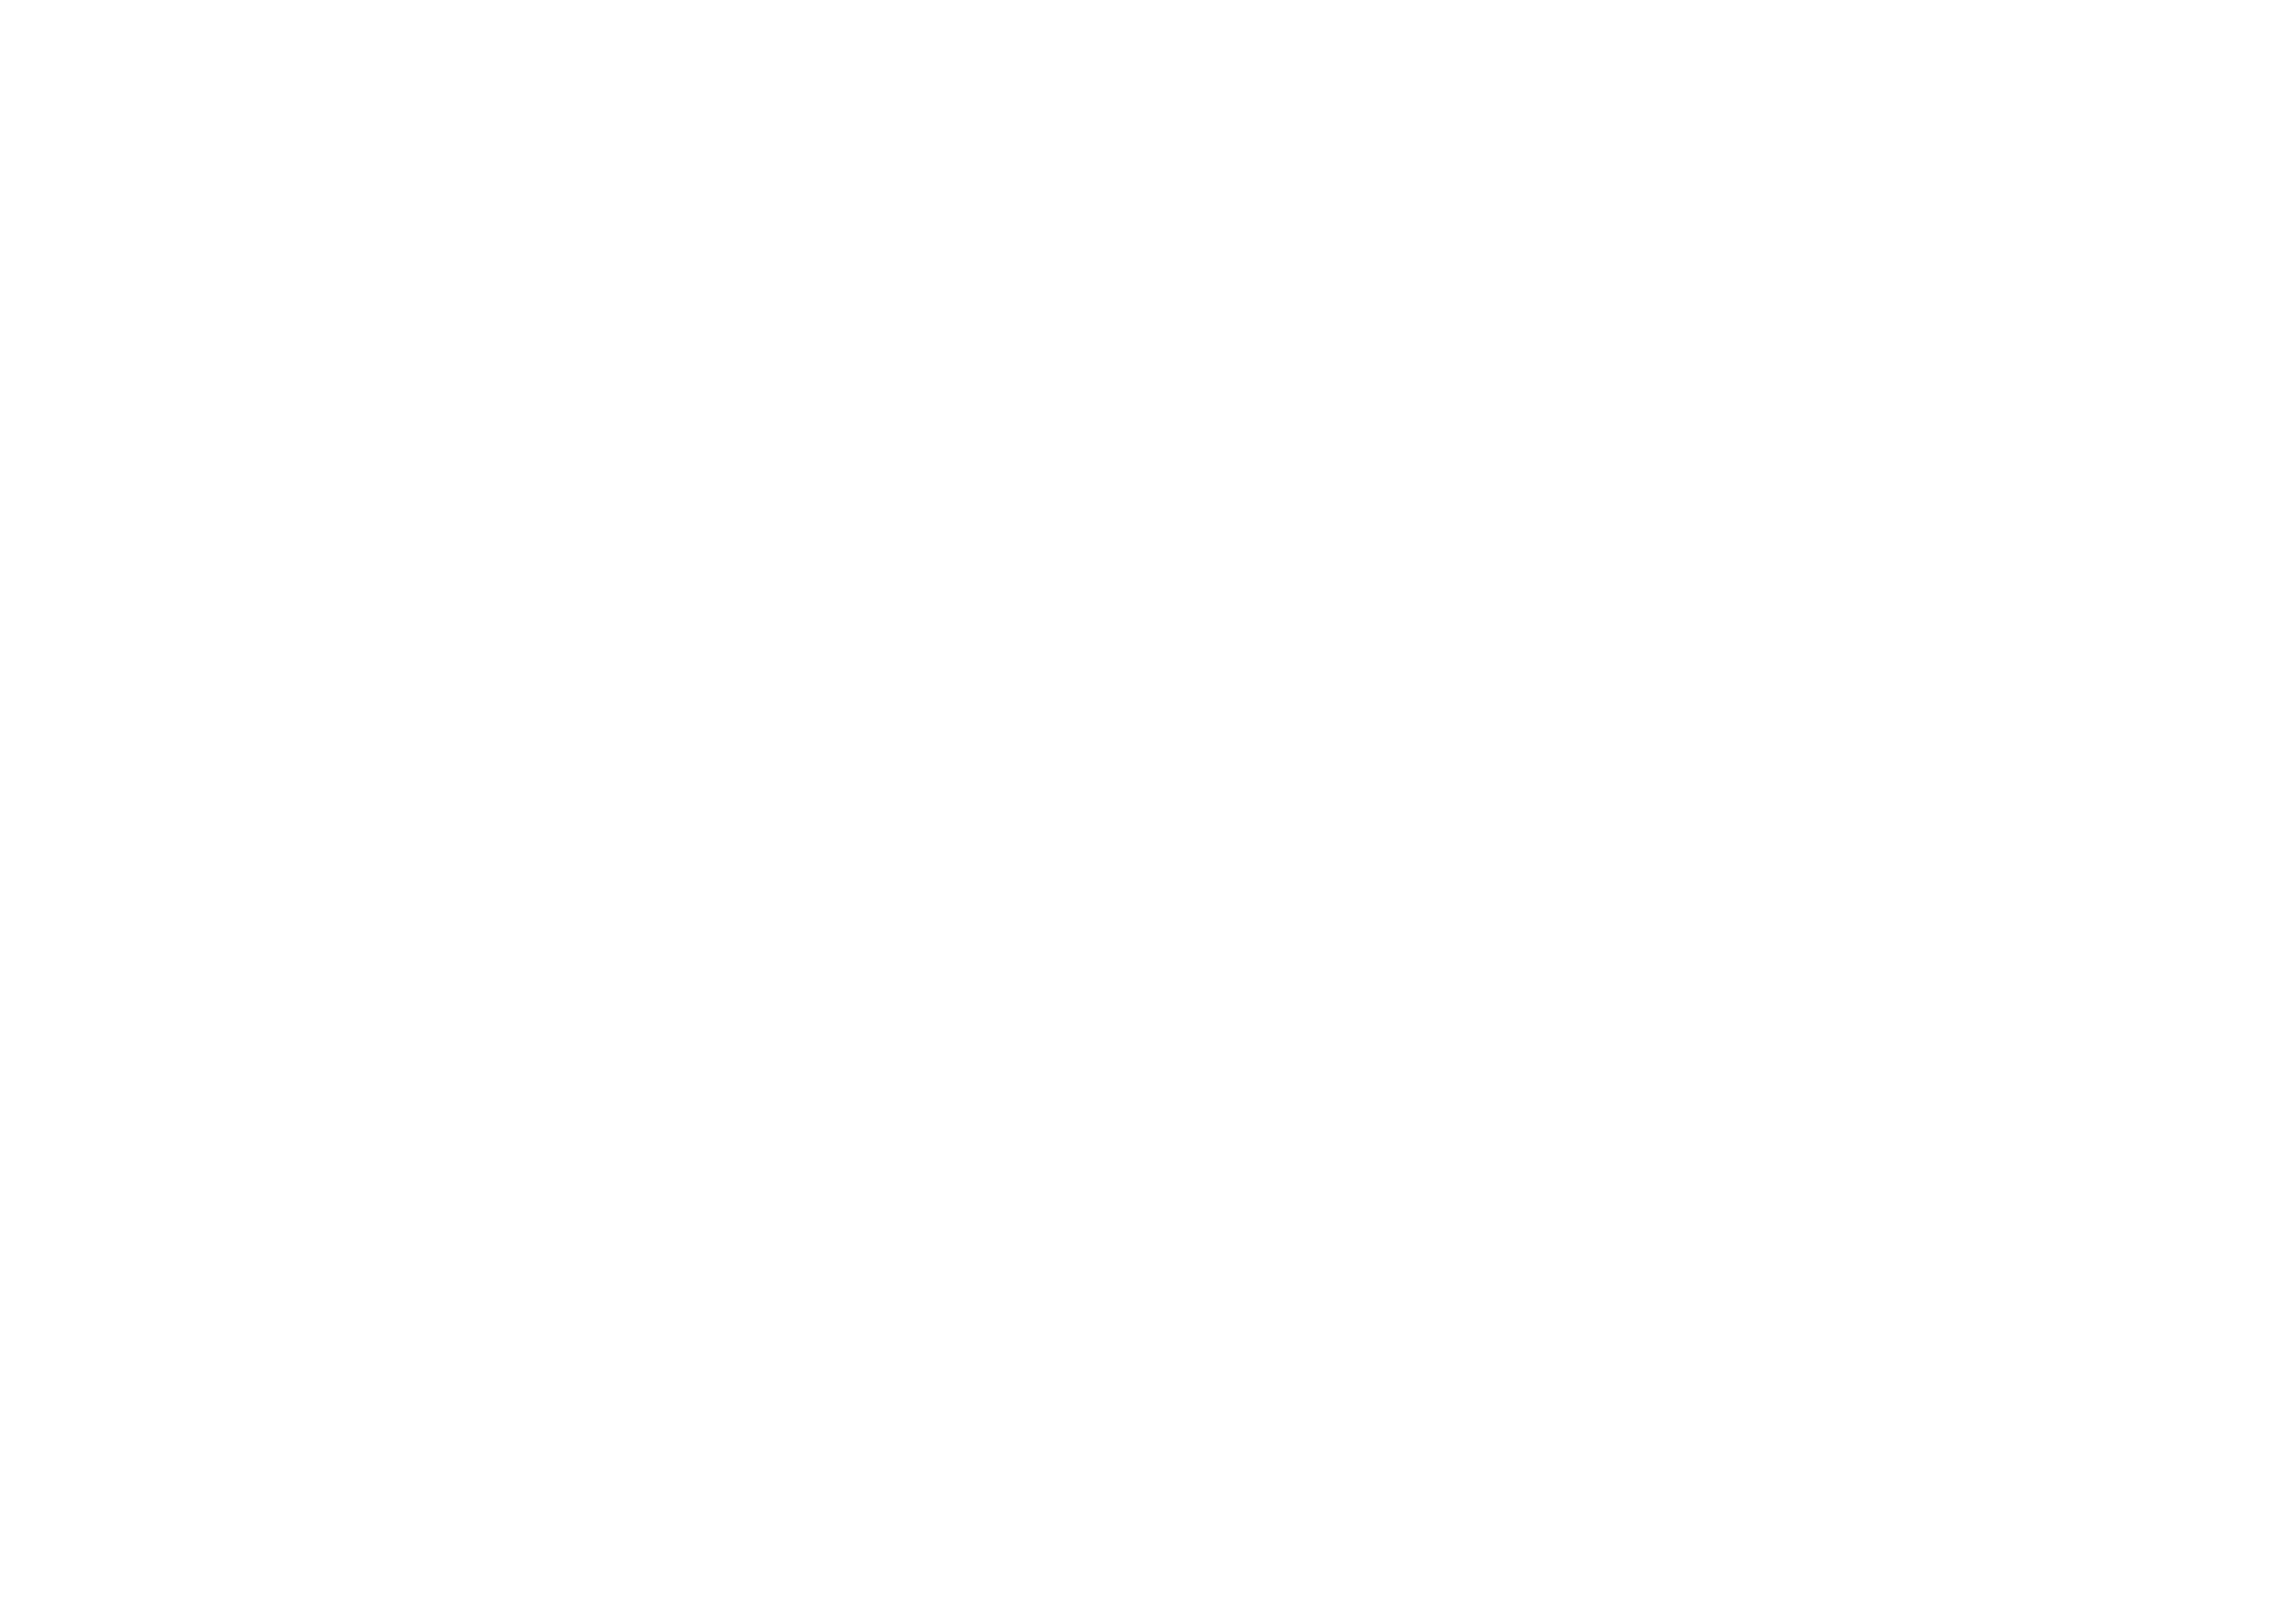 Ilios Logo white